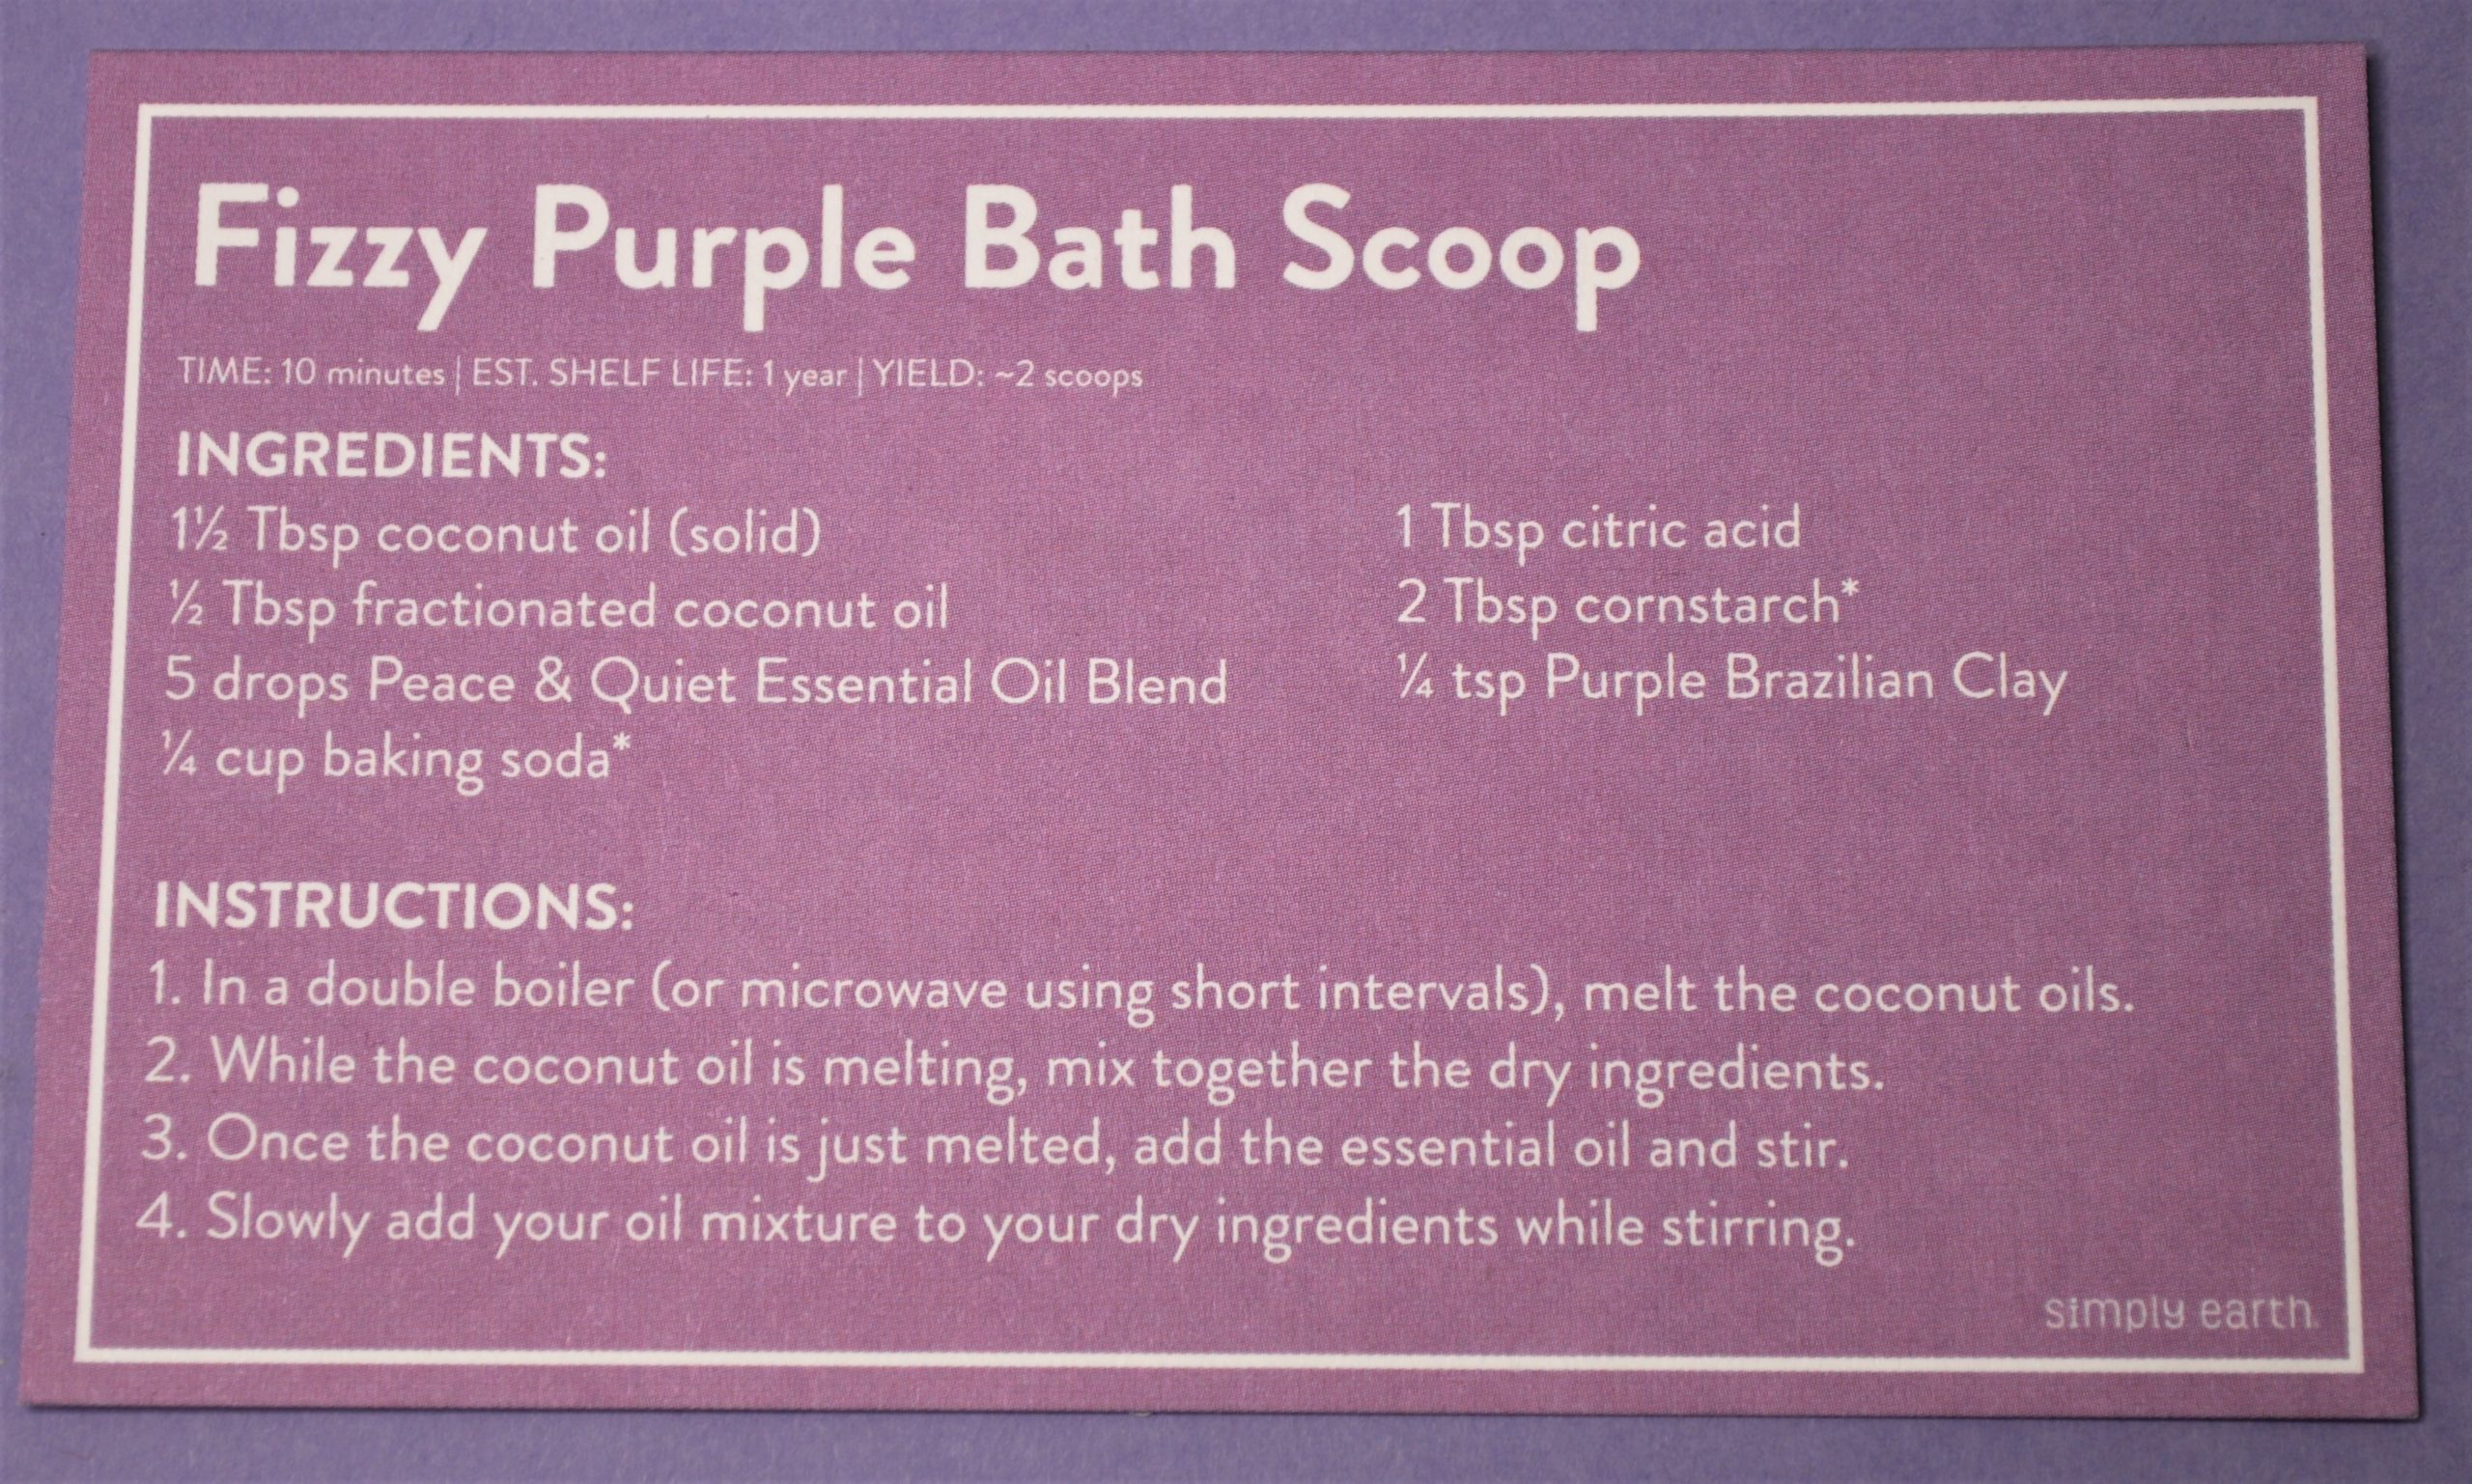 Fizzy Purple Bath Scoop Recipe Card